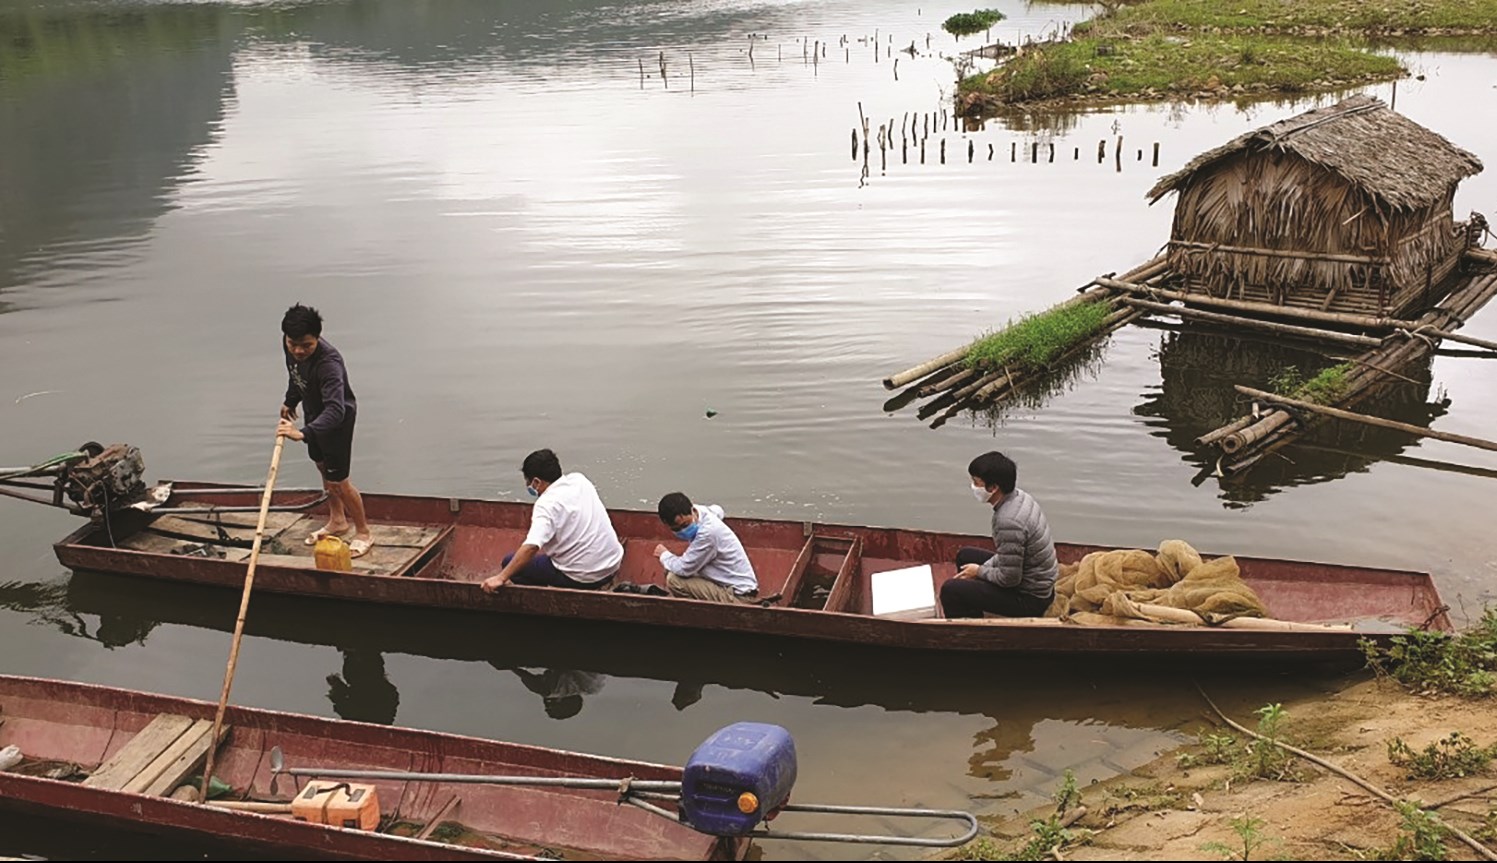 Lực lượng chức năng kiểm tra hiện tượng cá chết trên sông